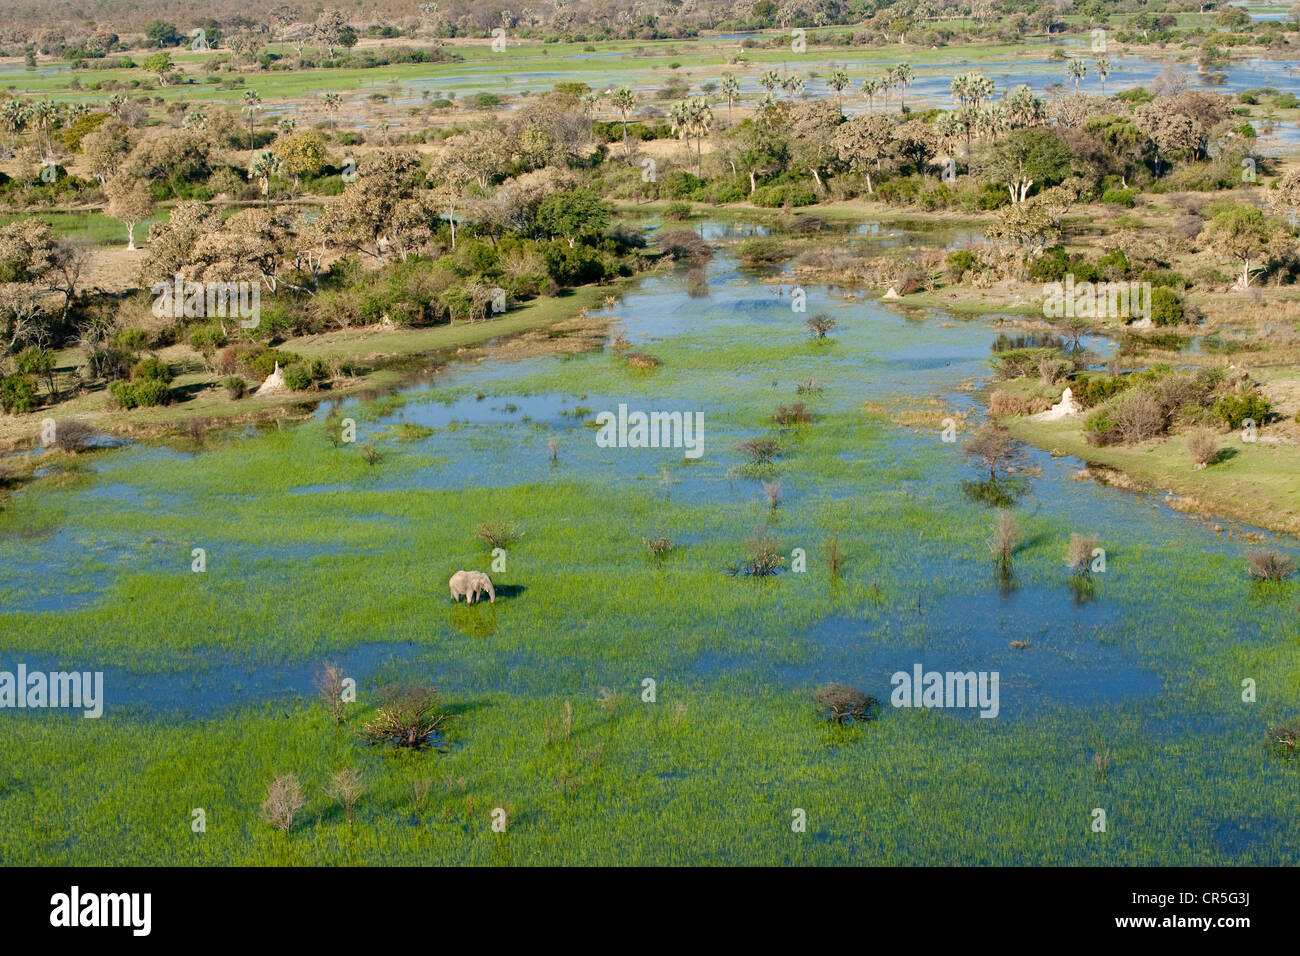 Botswana, North West District, Okavango Delta, elephant (aerial view) Stock Photo